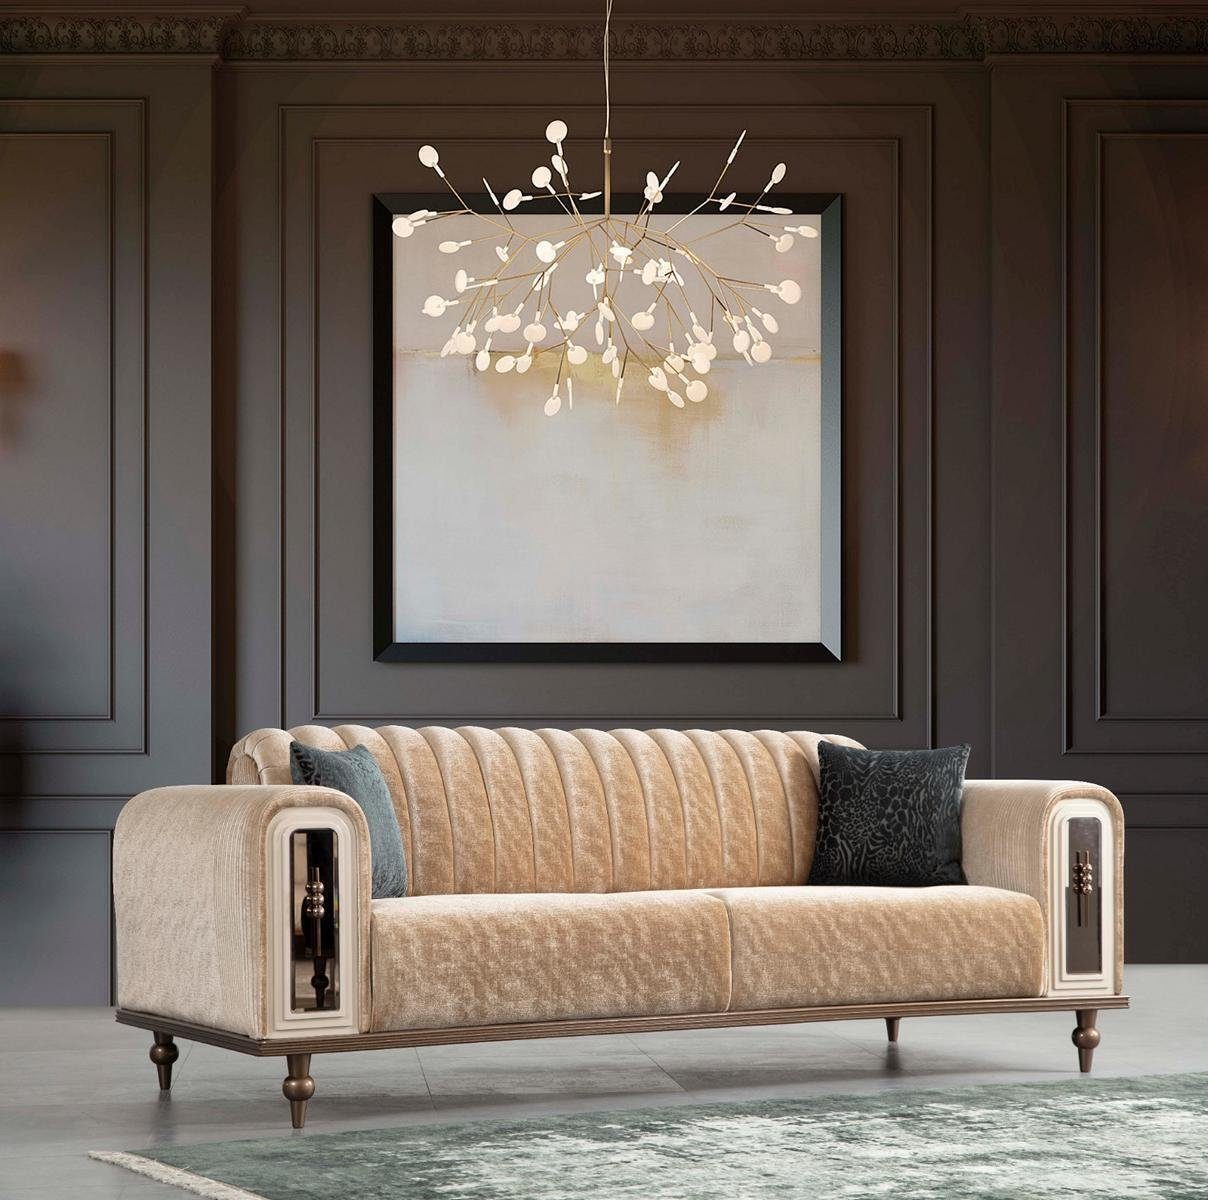 JVmoebel 3-Sitzer Luxus Bank Sofa Couch Beige Wohnzimmer Kanzlei JV Möbel Textil